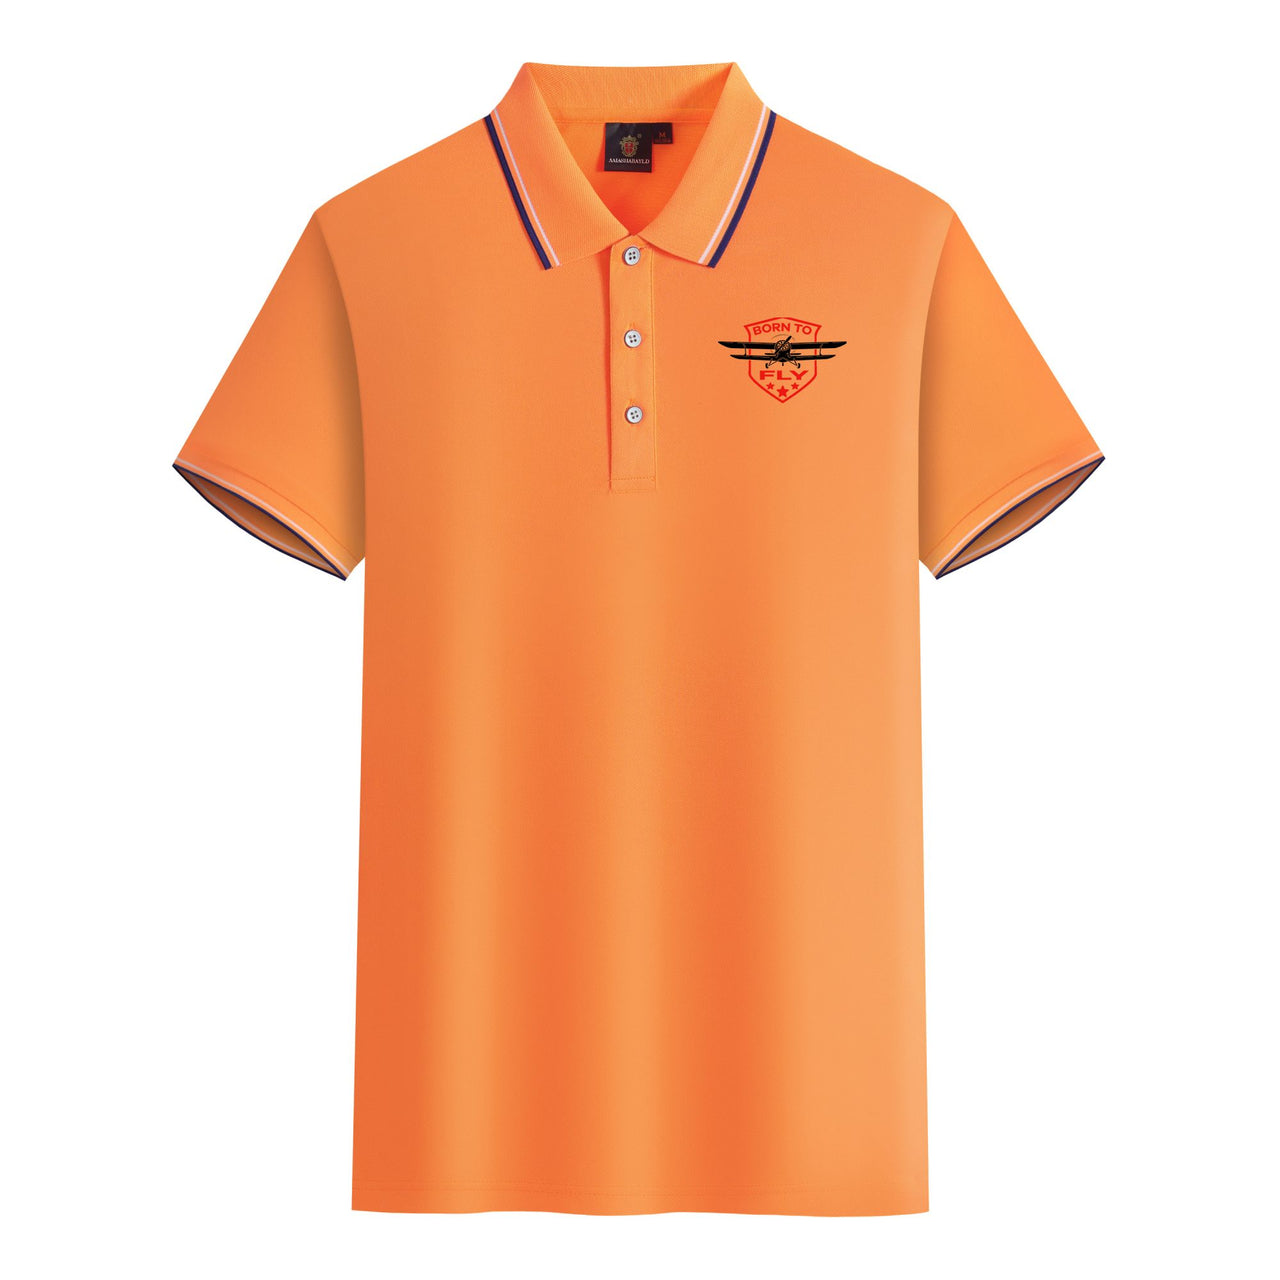 Born To Fly Designed Designed Stylish Polo T-Shirts